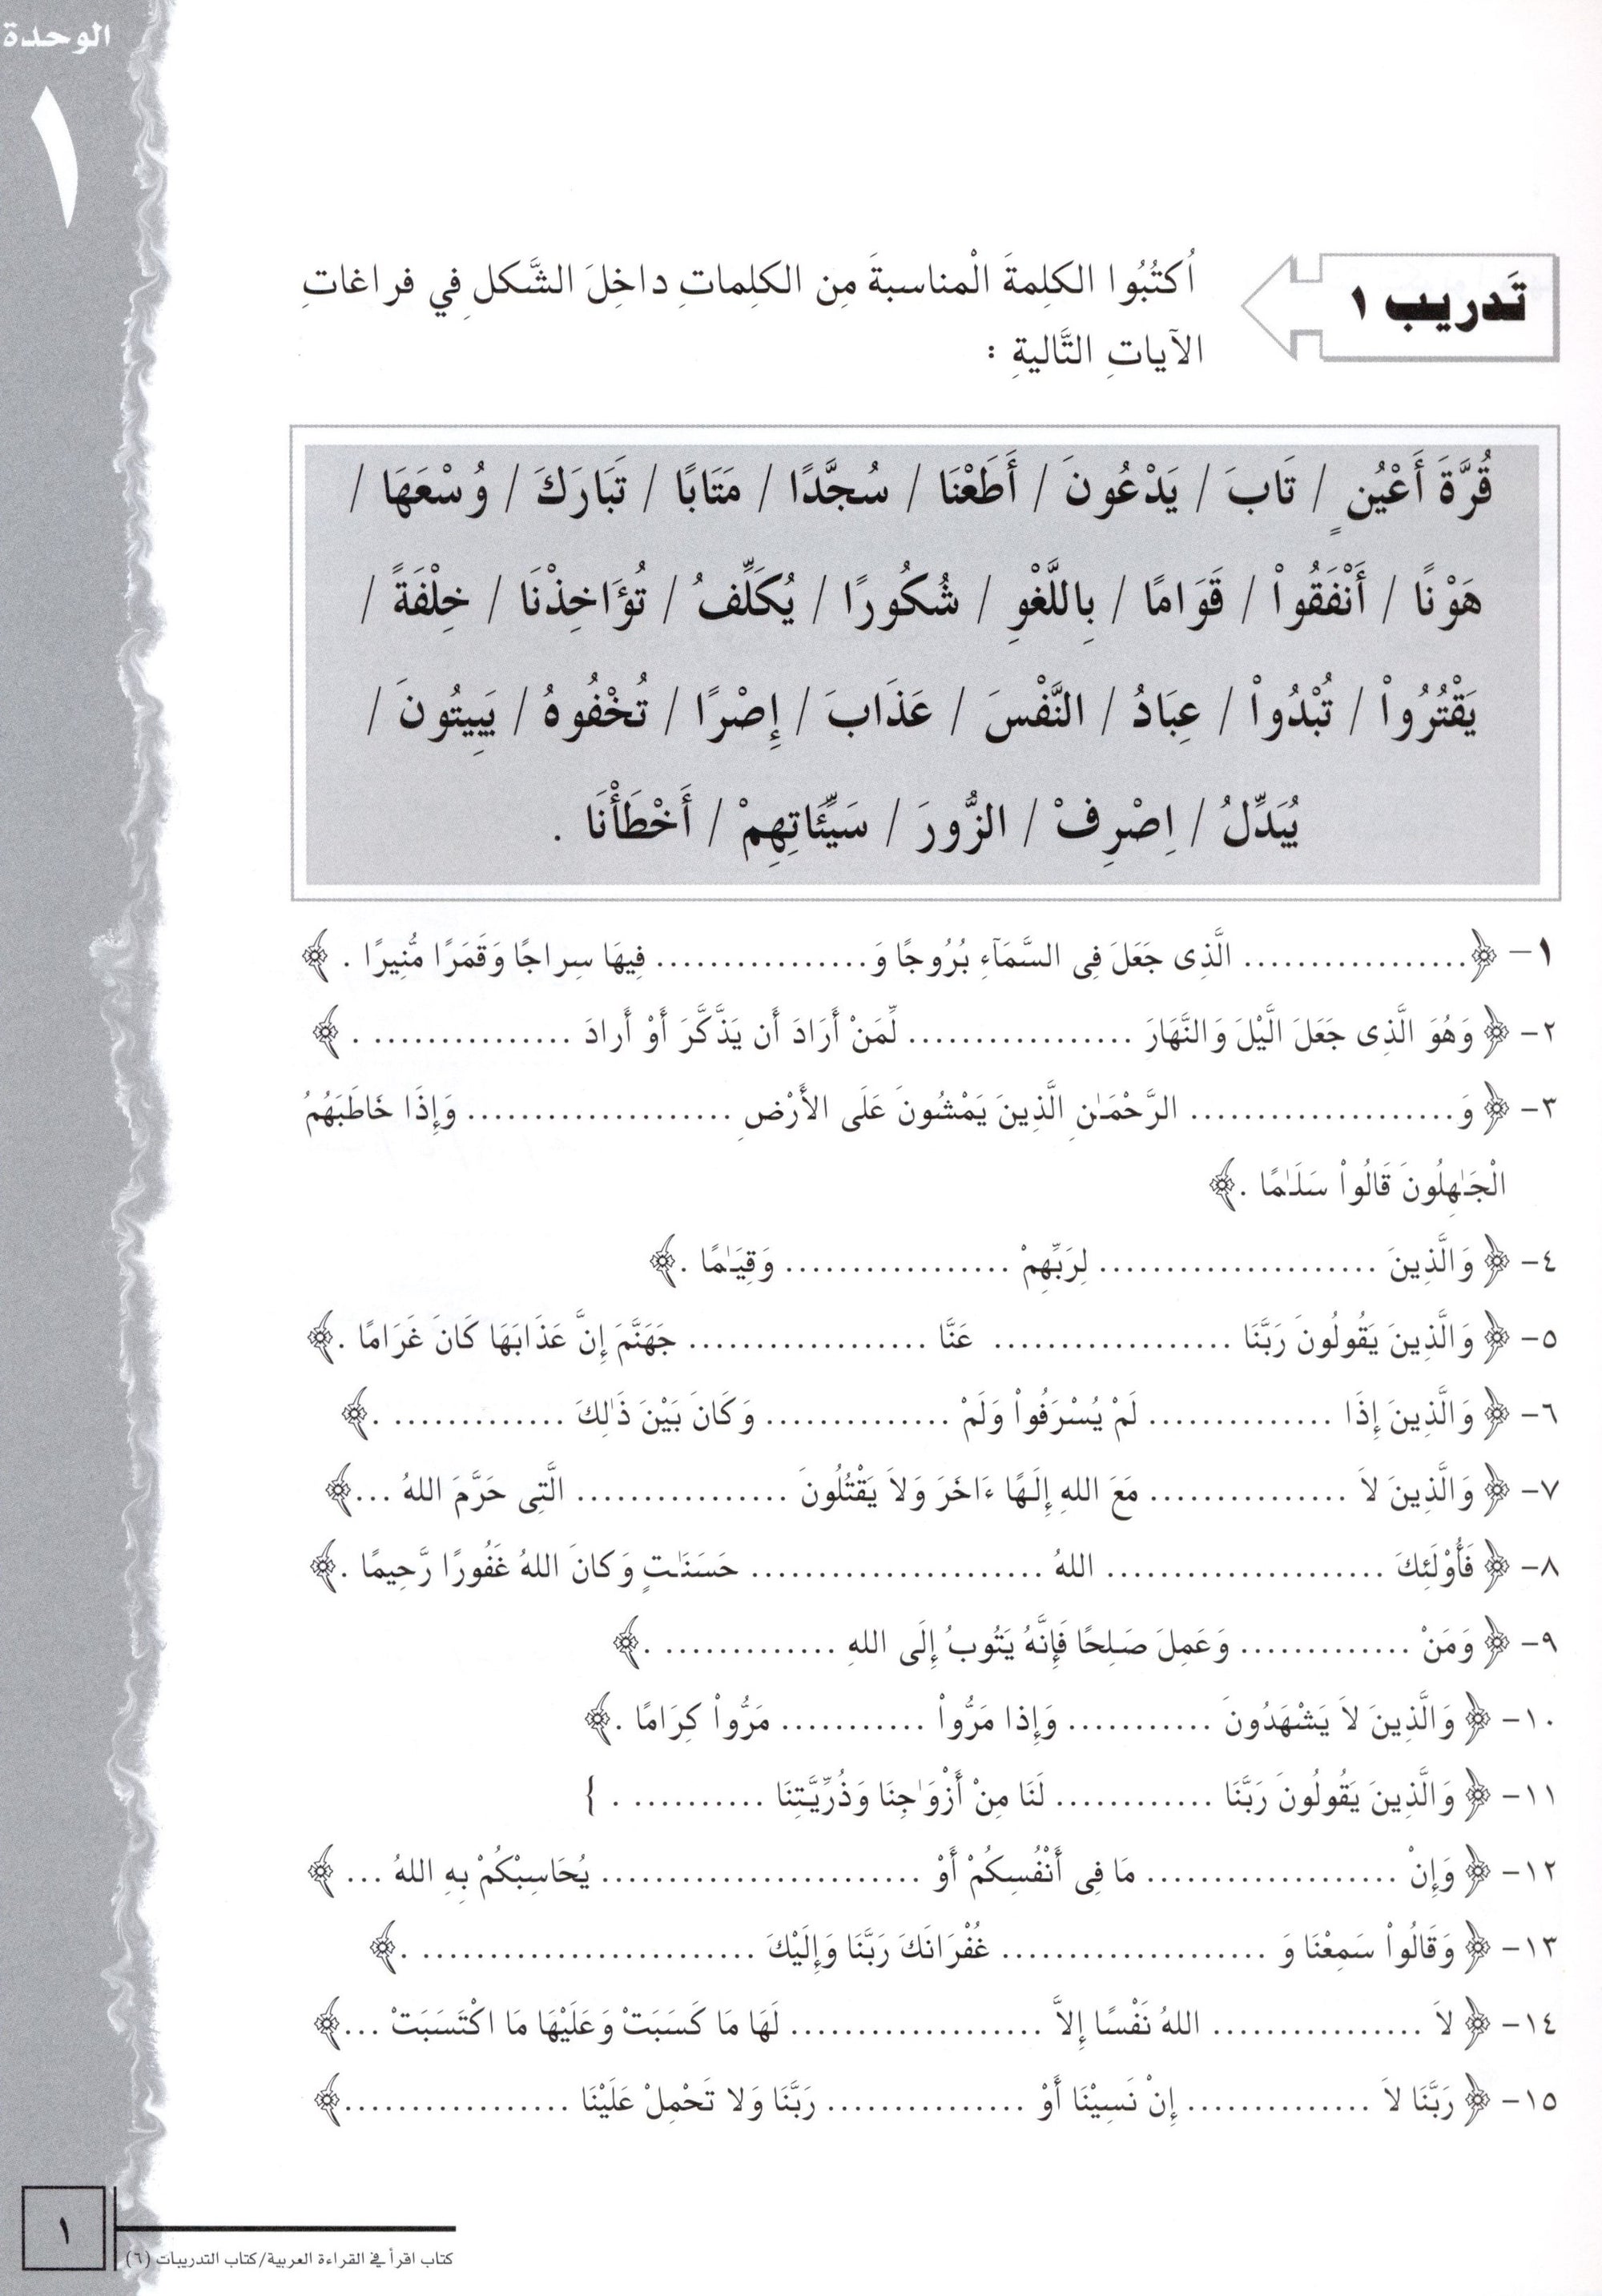 IQRA' Arabic Reader Workbook Level 6